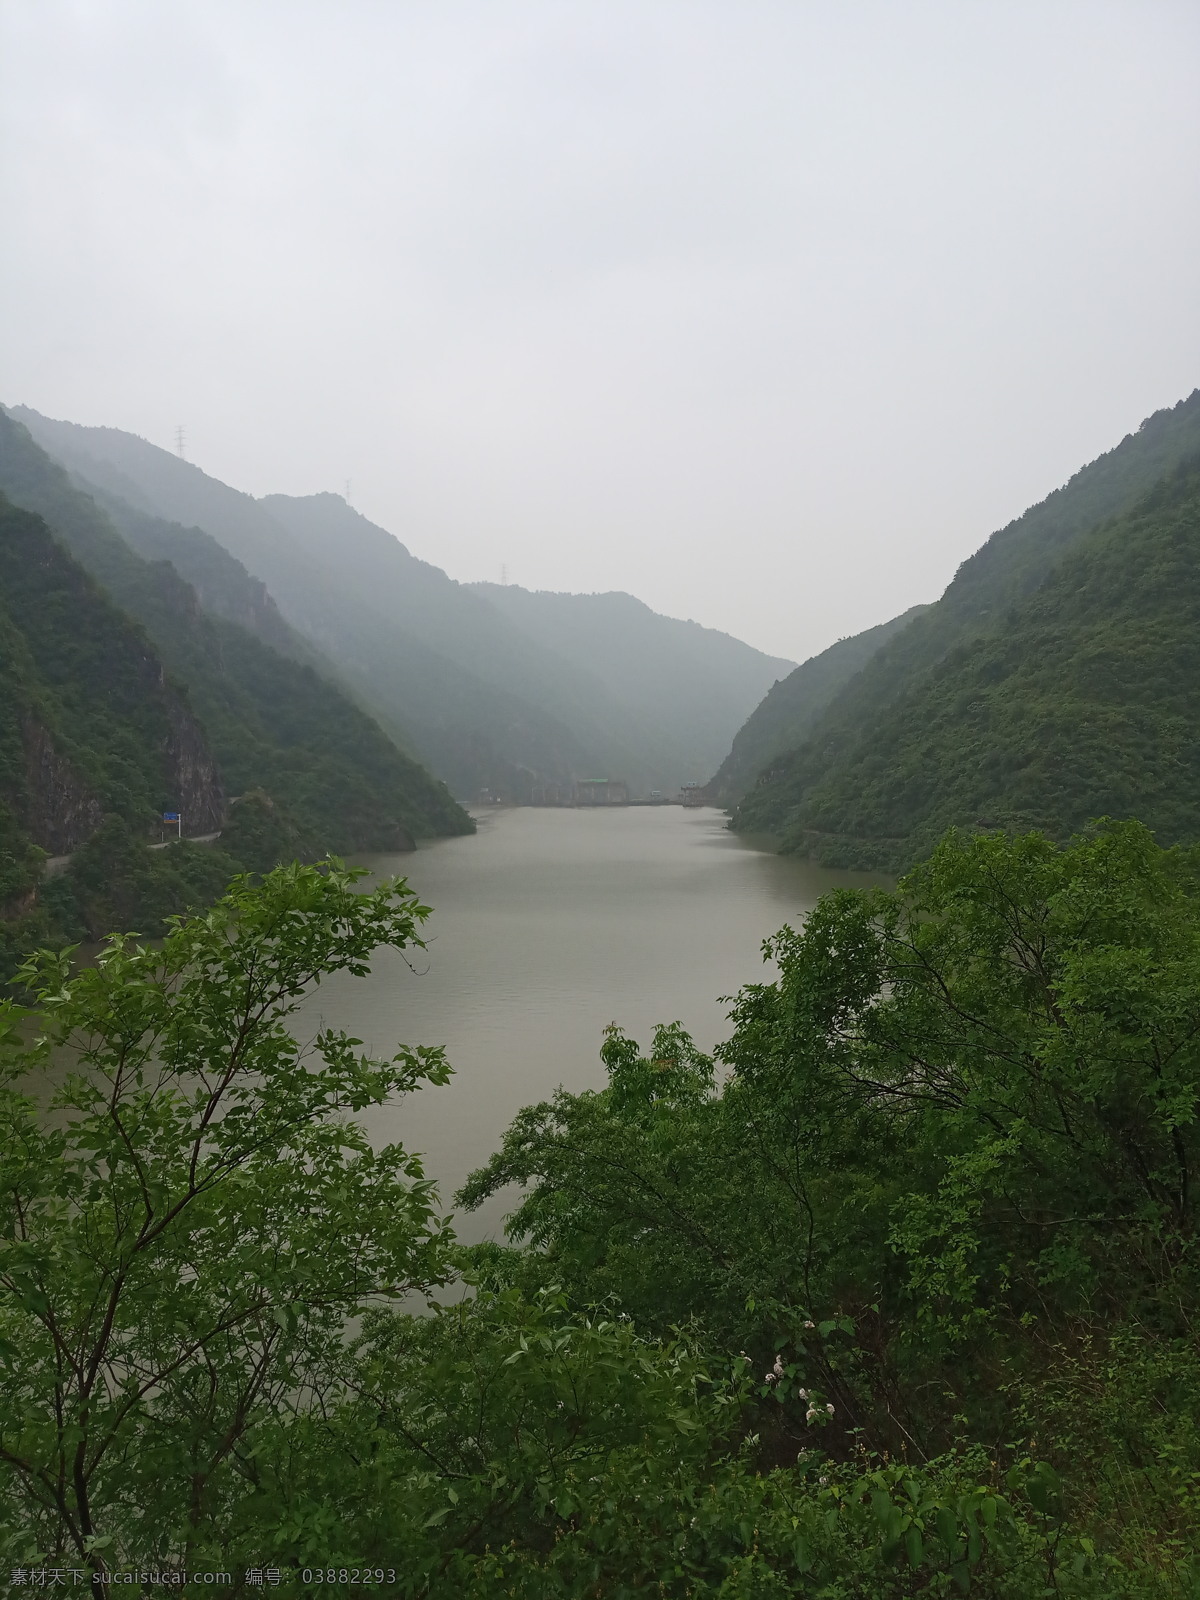 汉江 汉中 栈道 青山绿水 绿水 自然景观 山水风景